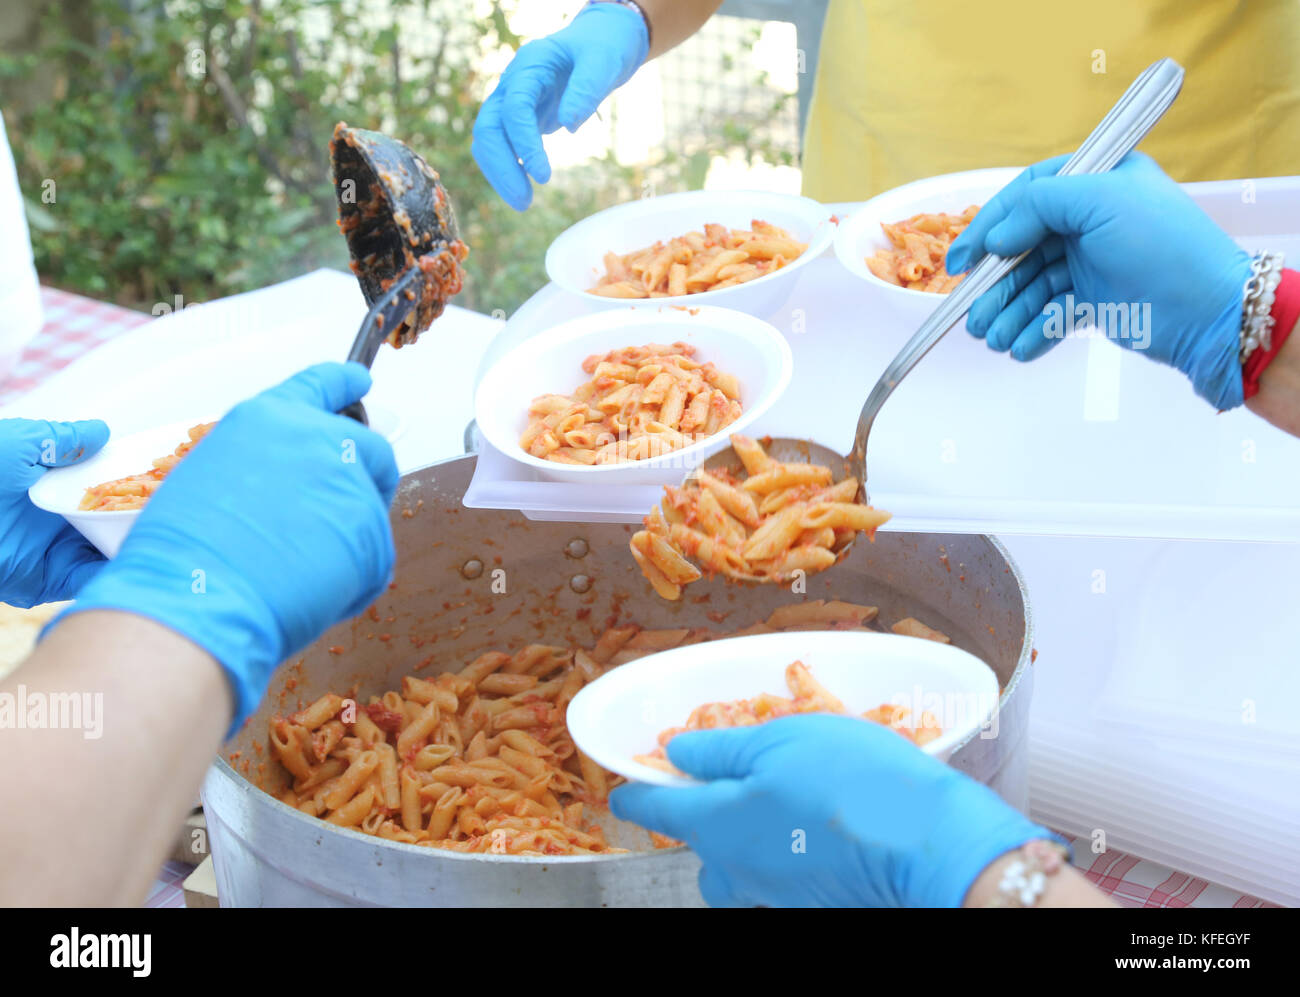 Le mani con guanti in lattice blu dei cuochi durante la distribuzione dei pasti di pasta con salsa di pomodoro Foto Stock